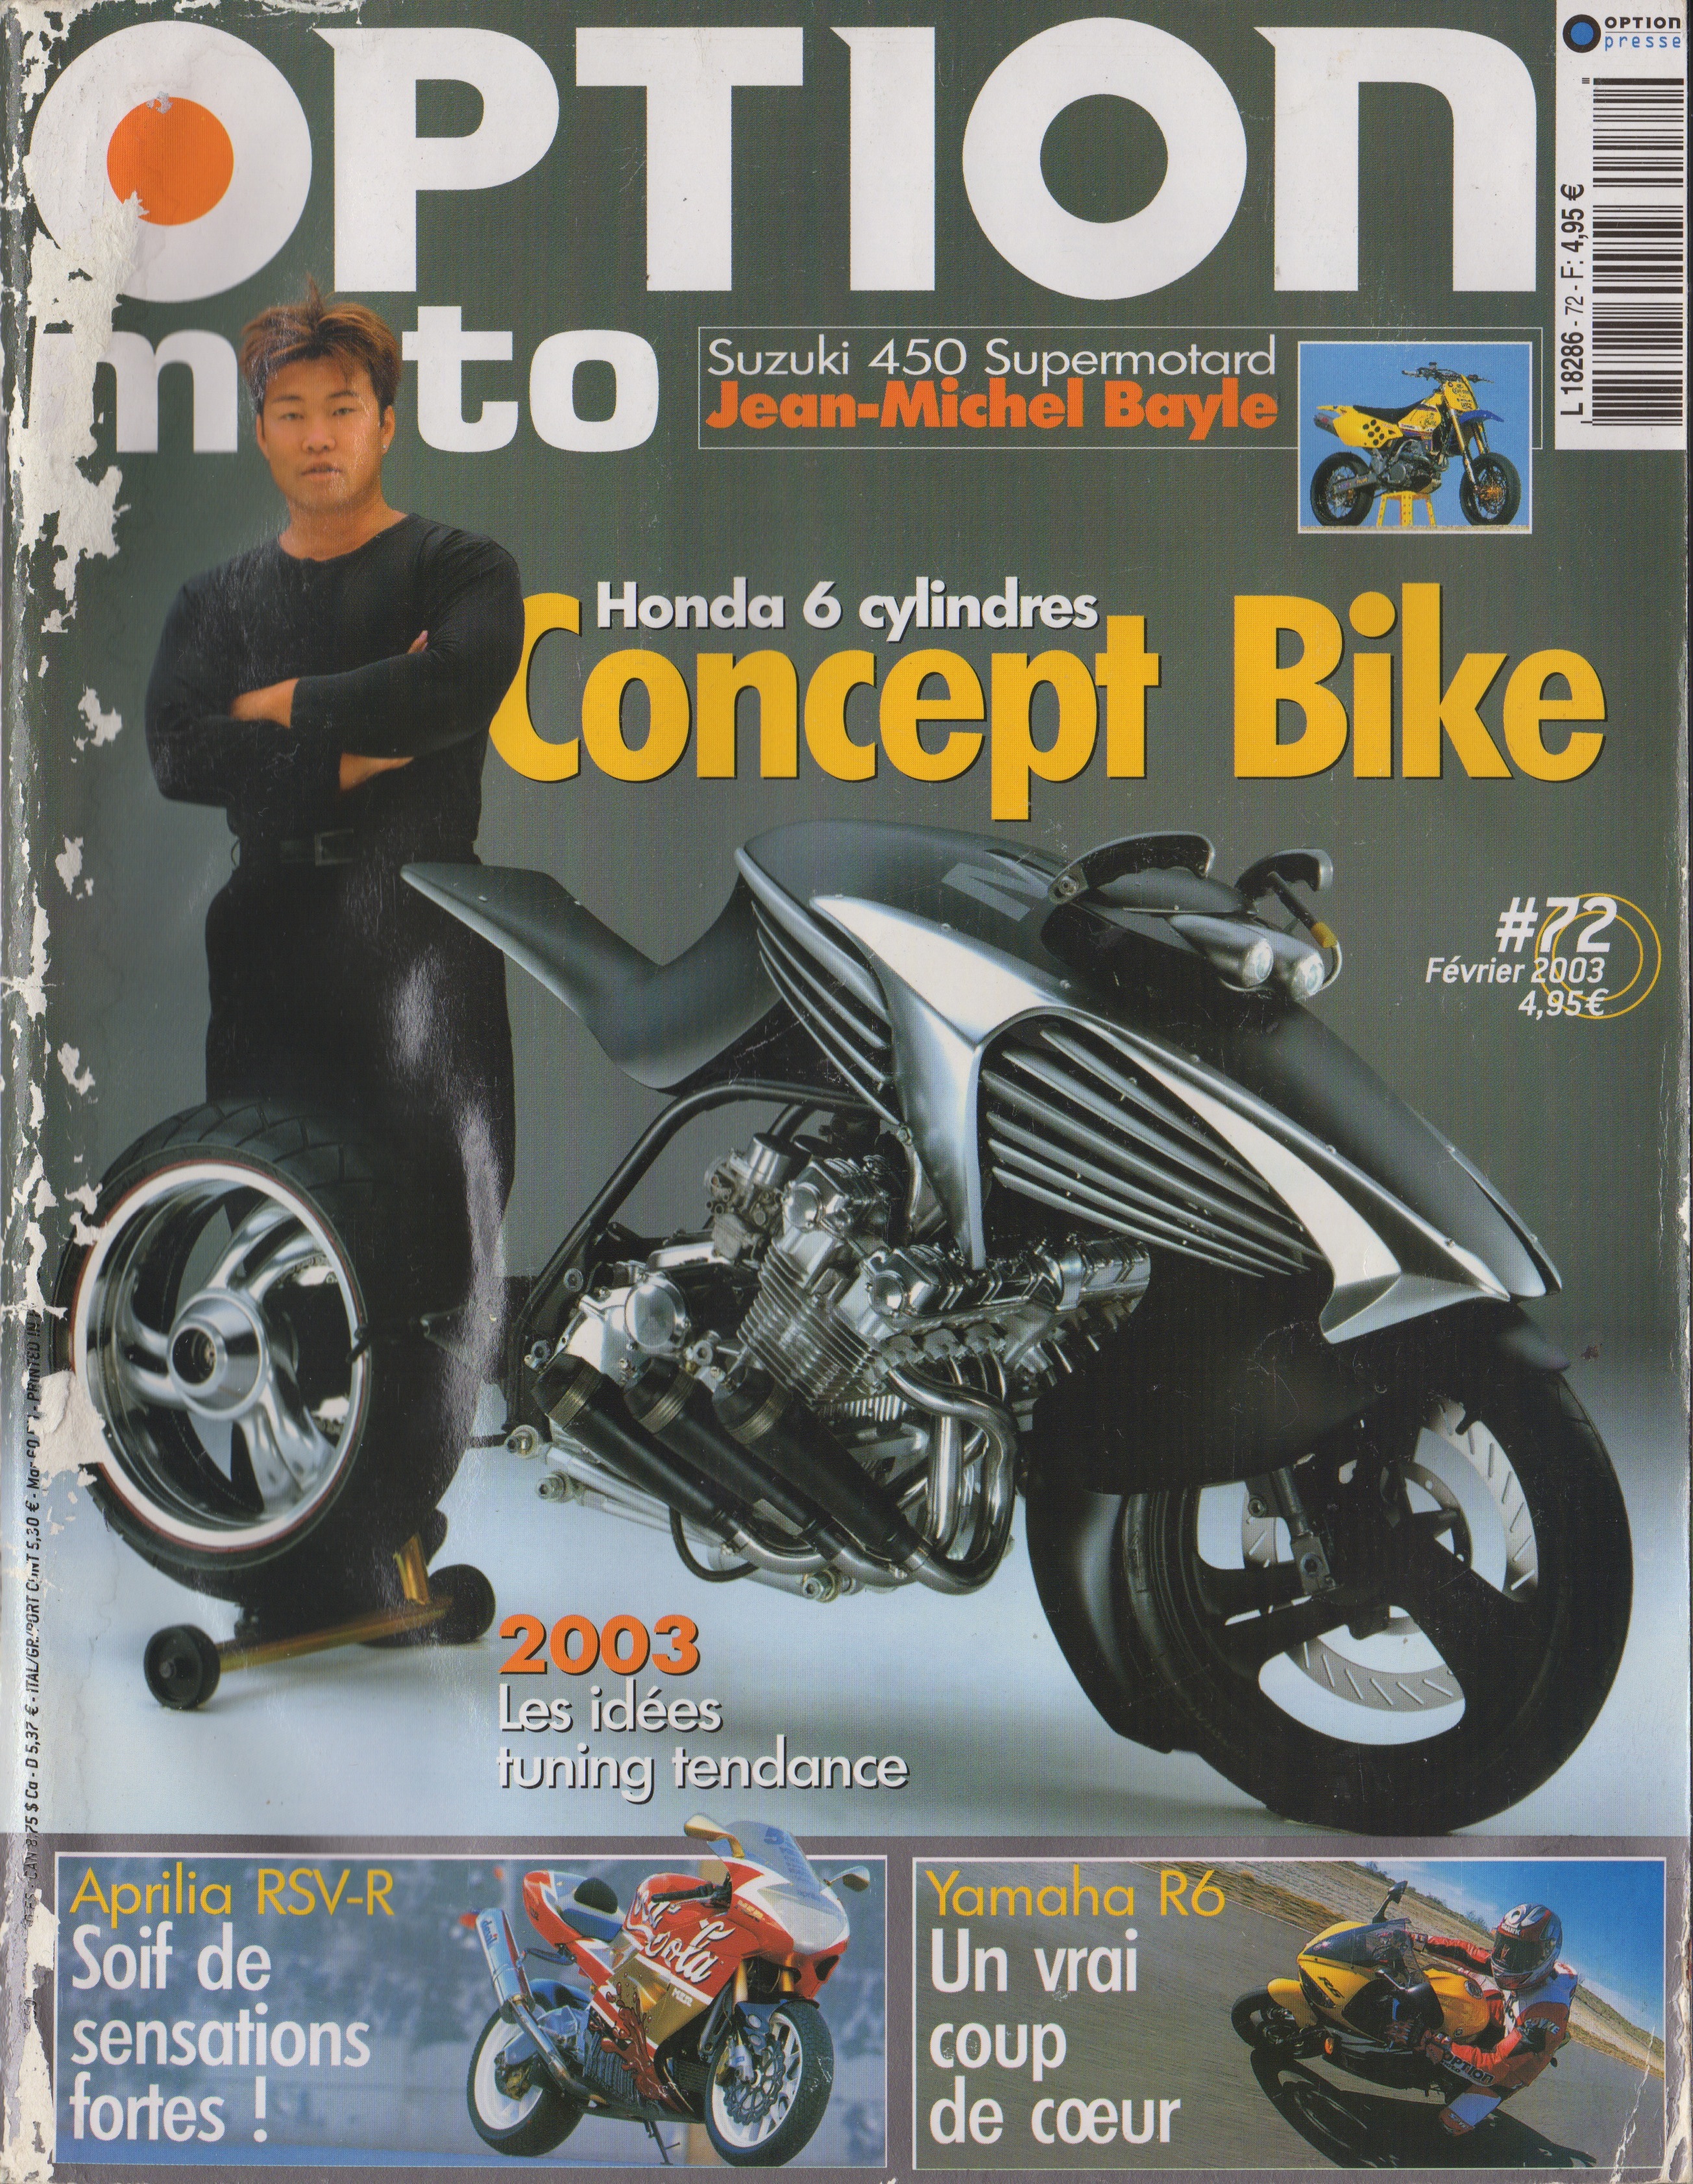 La couverture du magazine Option Moto numéro 72 où est présenté la moto du guidon d'or de Jean-Michel Bayle